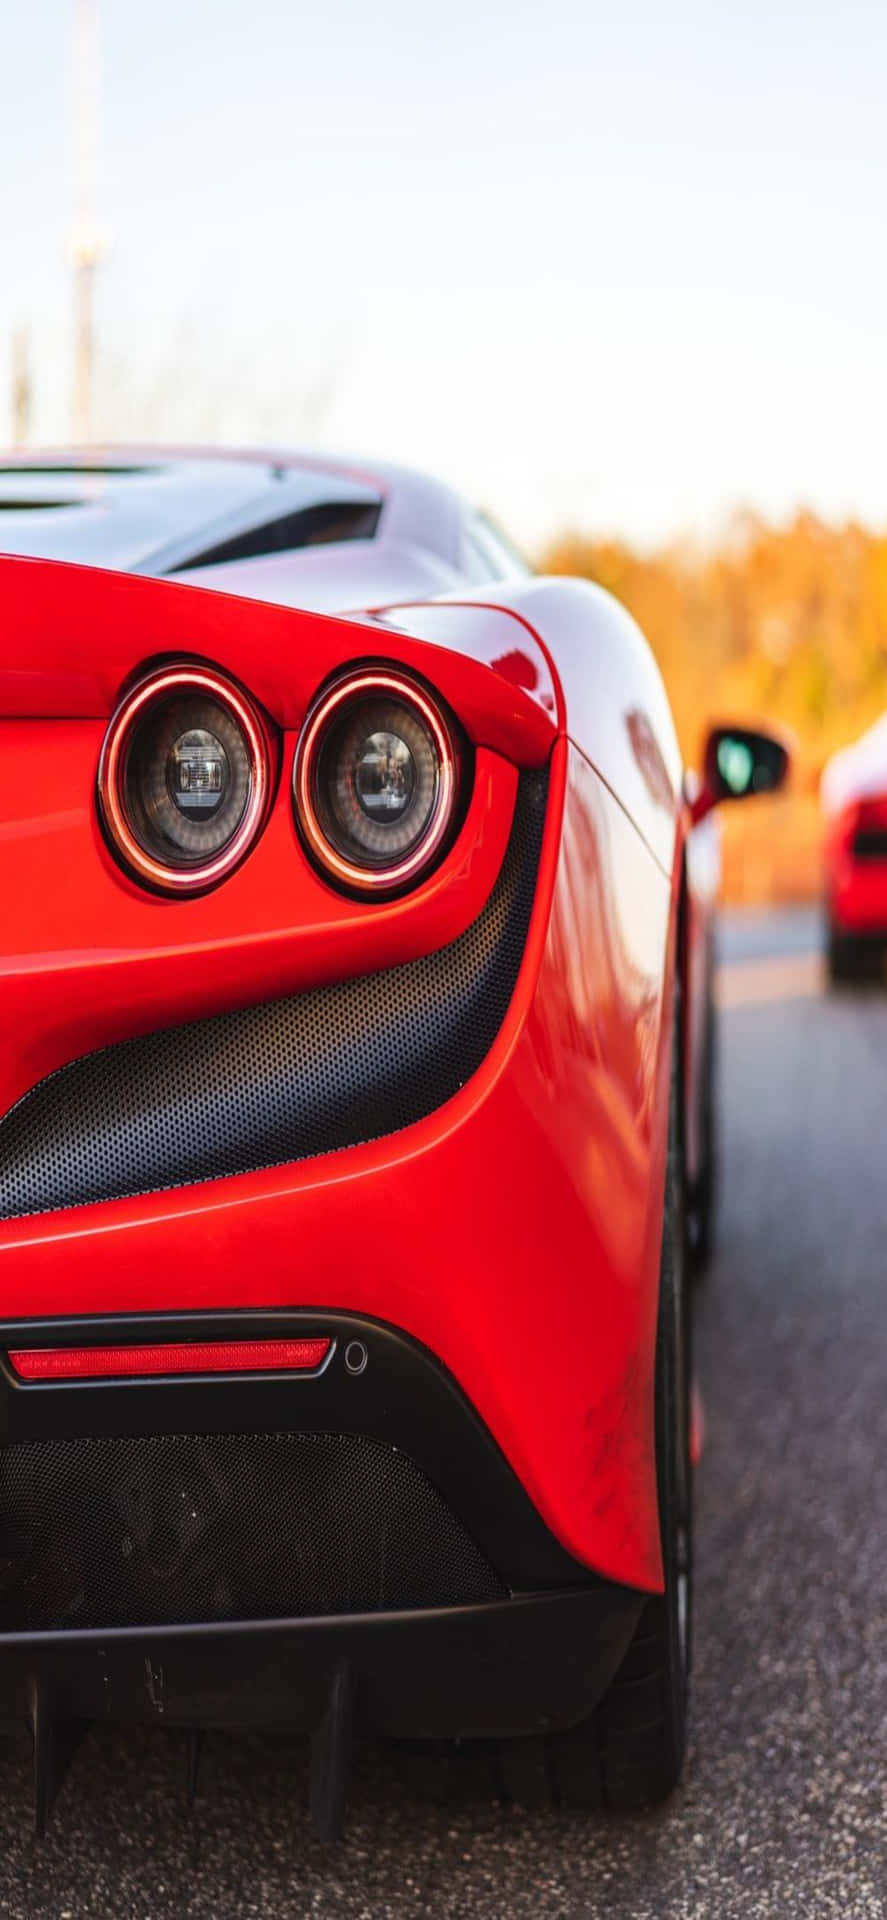 Iphonexs Max Ferrari Hintergrund Rückseite Eines Roten Ferrari F8 Tributo